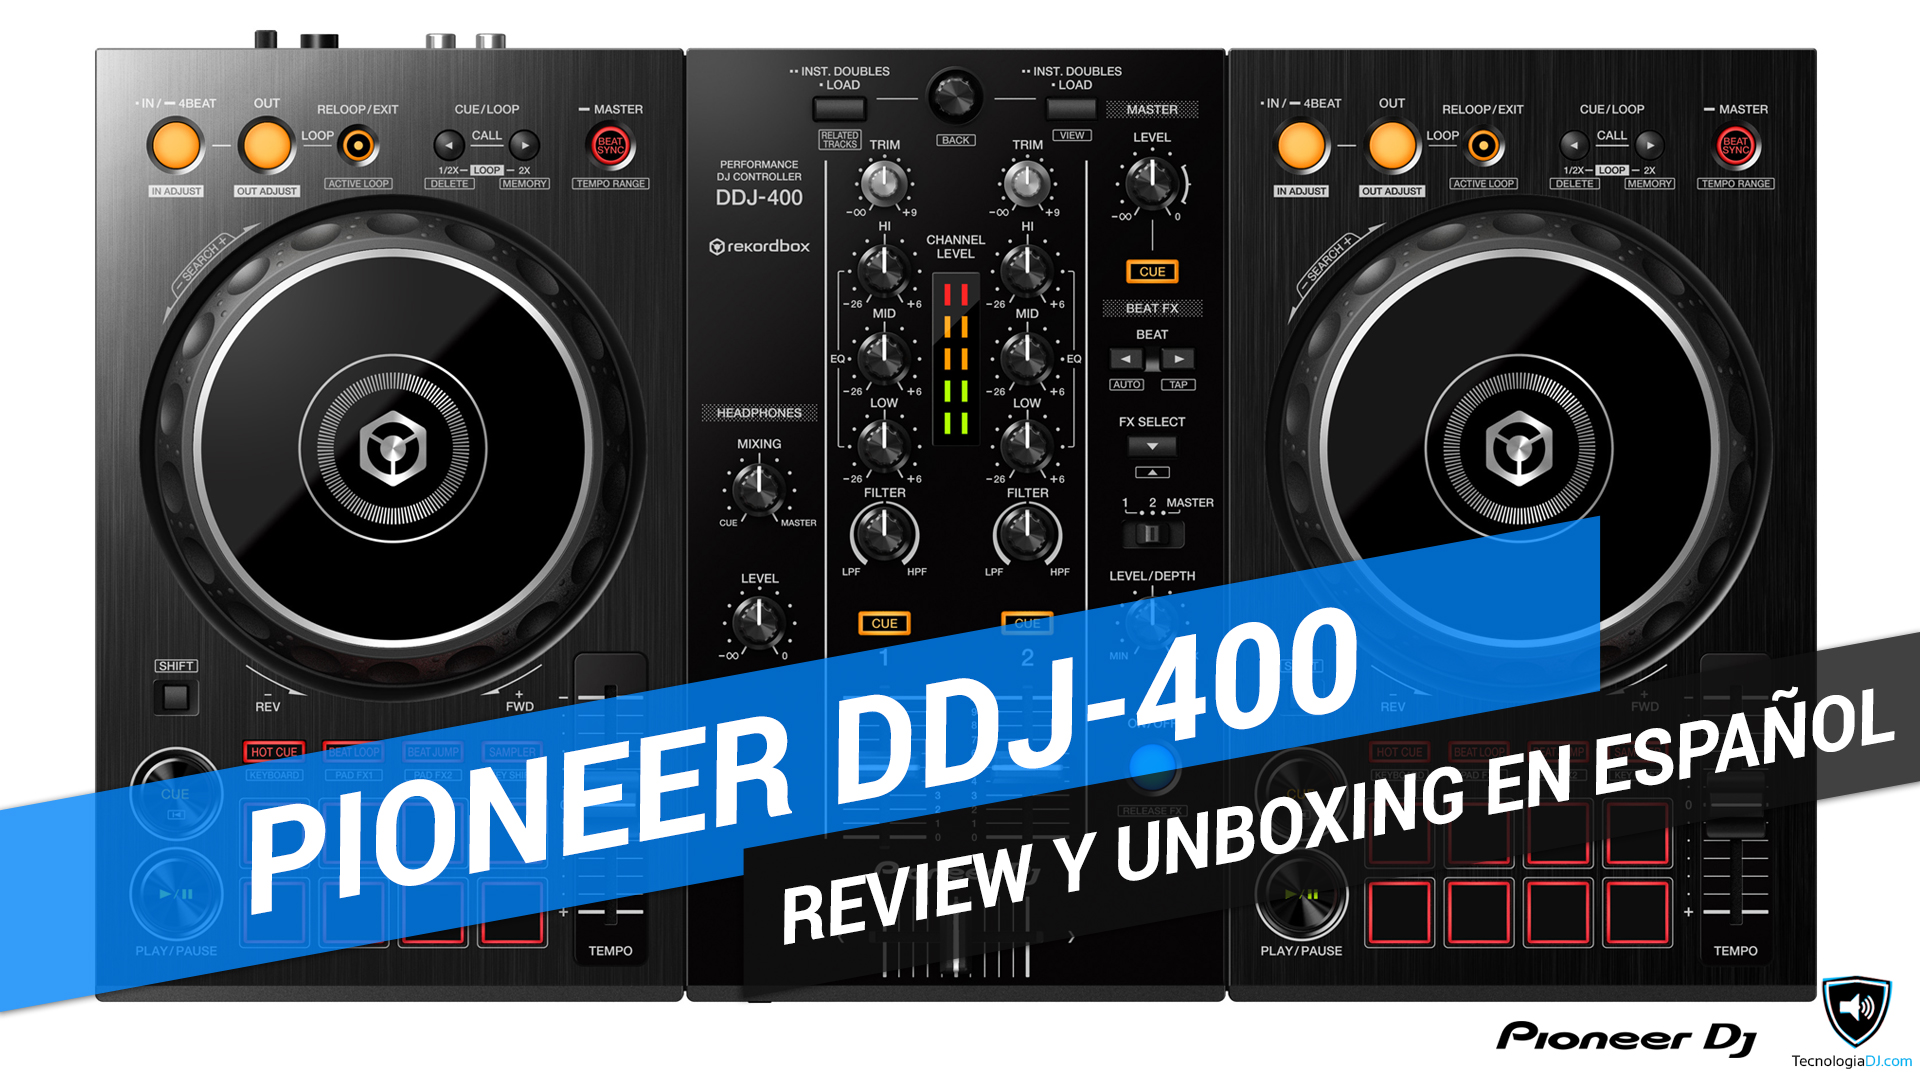 Review y unboxing en español controlador Pioneer DDJ-400